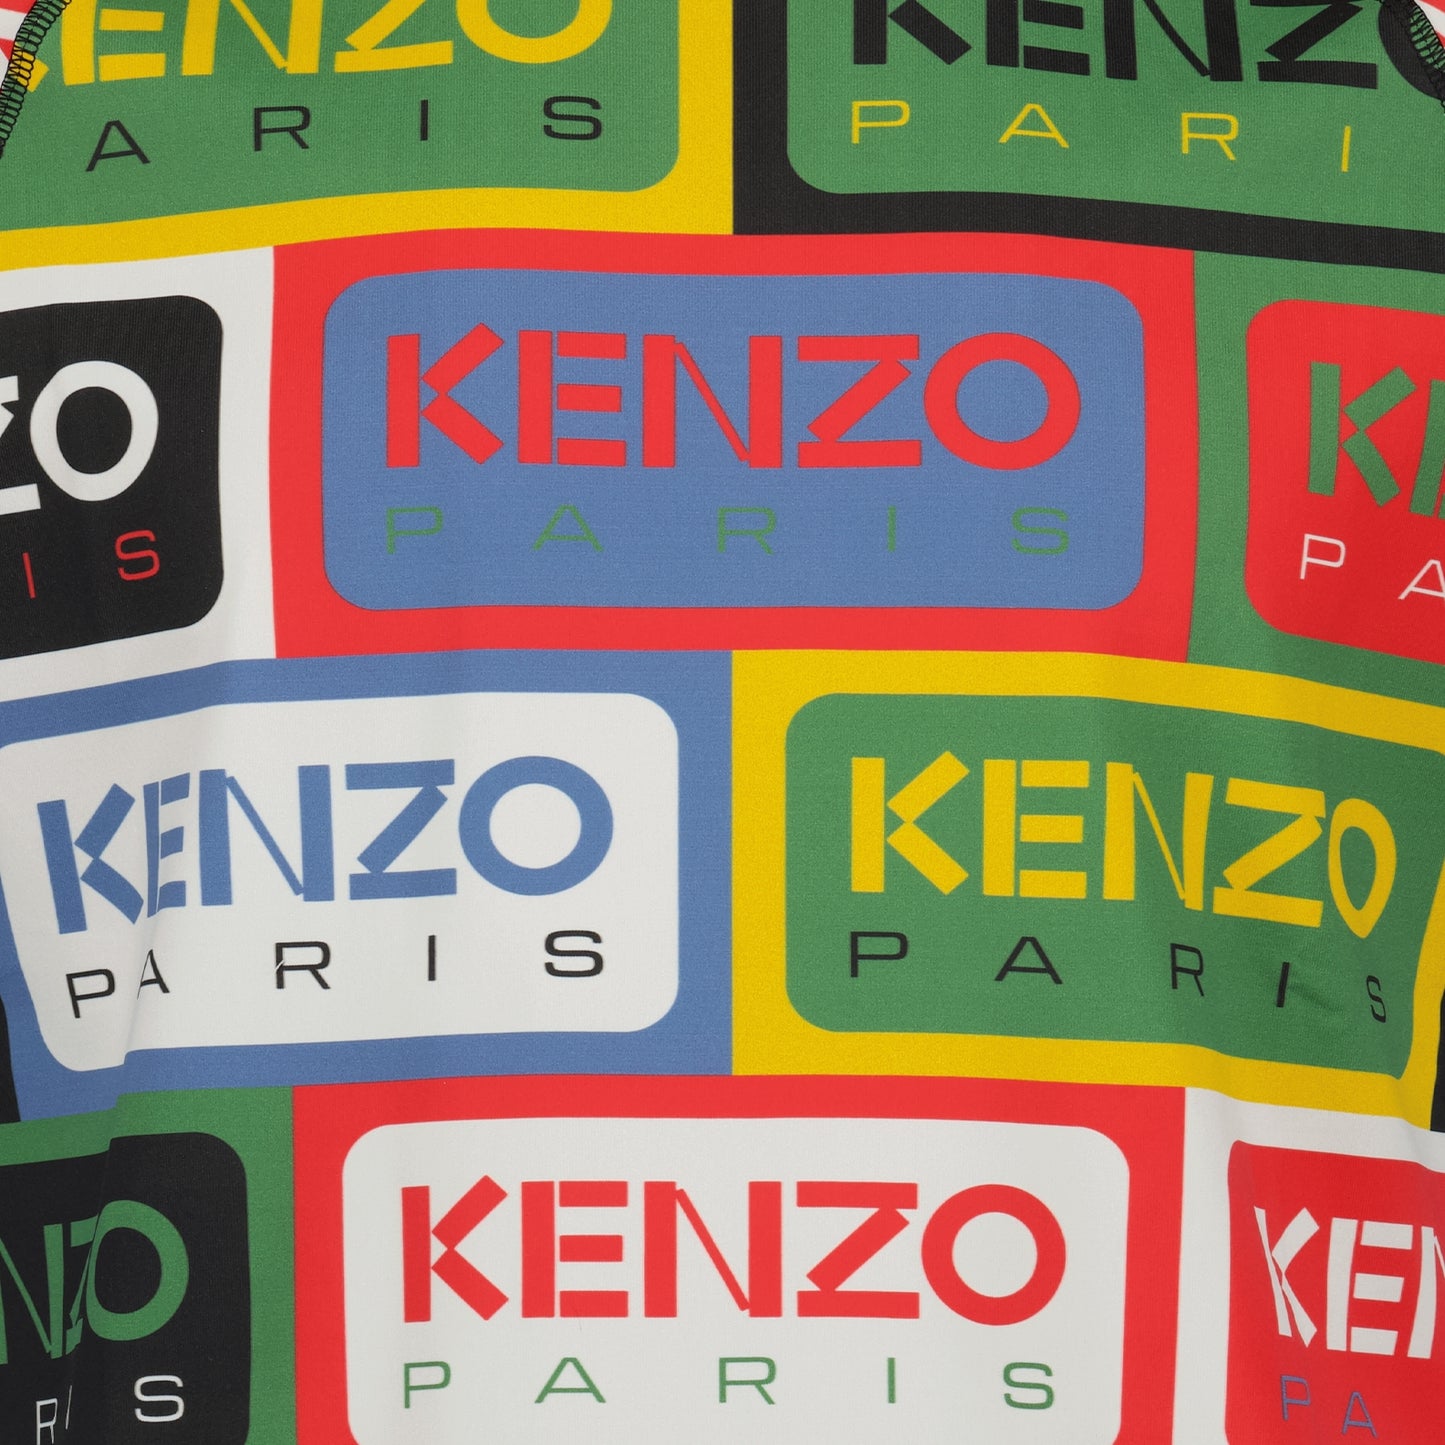 T-shirt Kenzo Labels Kenzo pour Homme | myCompañero.com